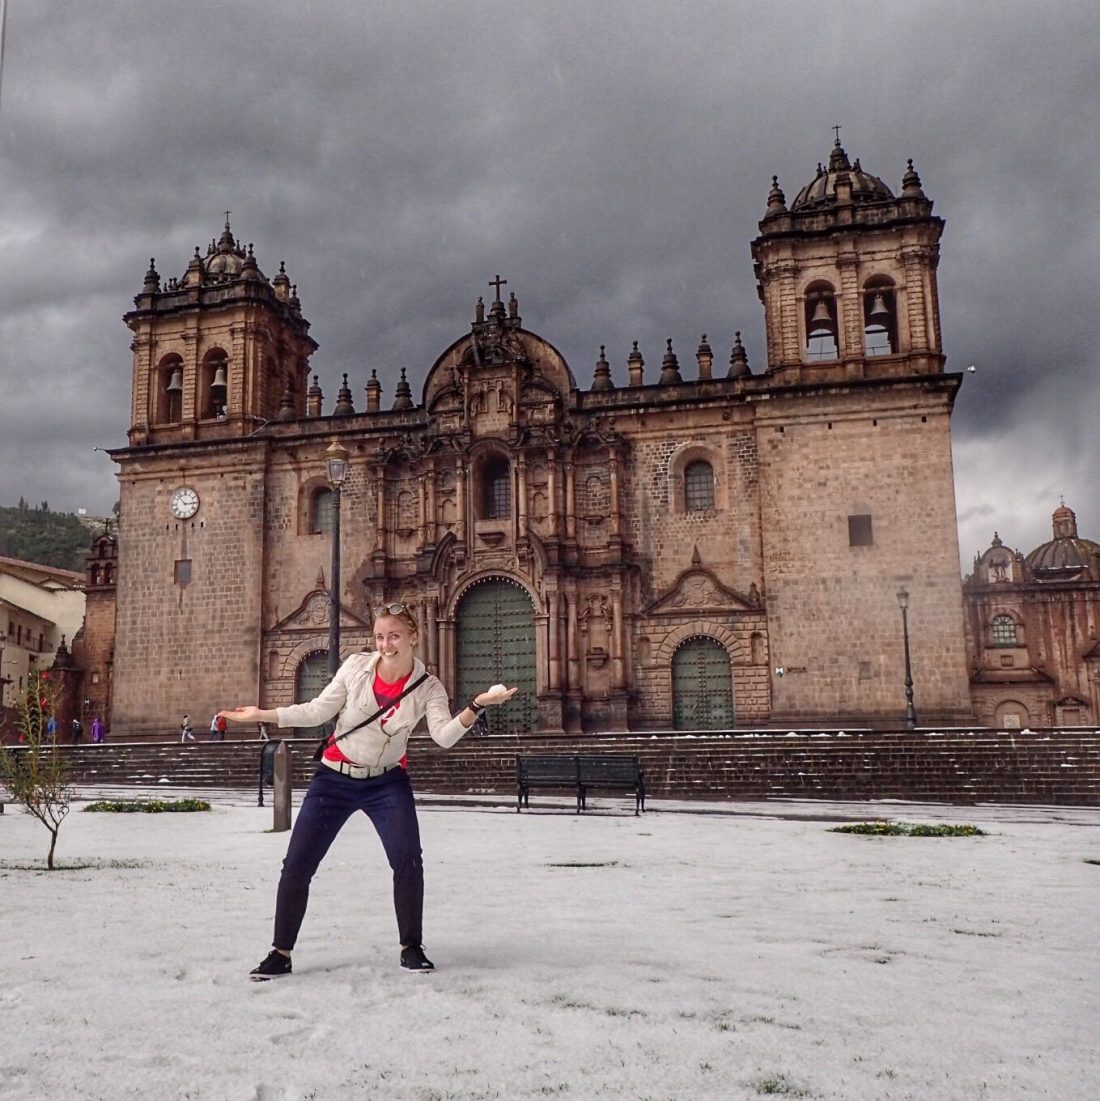 hagelbuitje in Cusco - warm welkom zeg maar..